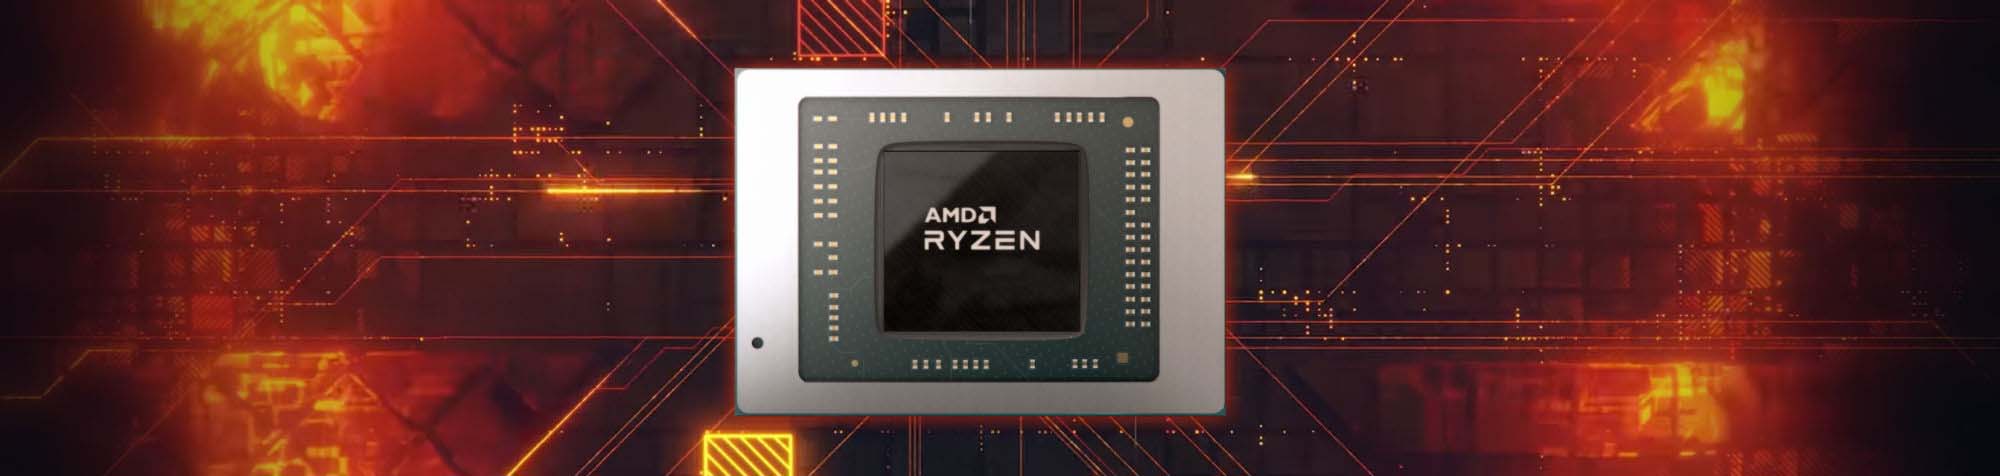 AMD-Ryzen-7000-Rembrandt-Phoenix-Hero-2.jpg